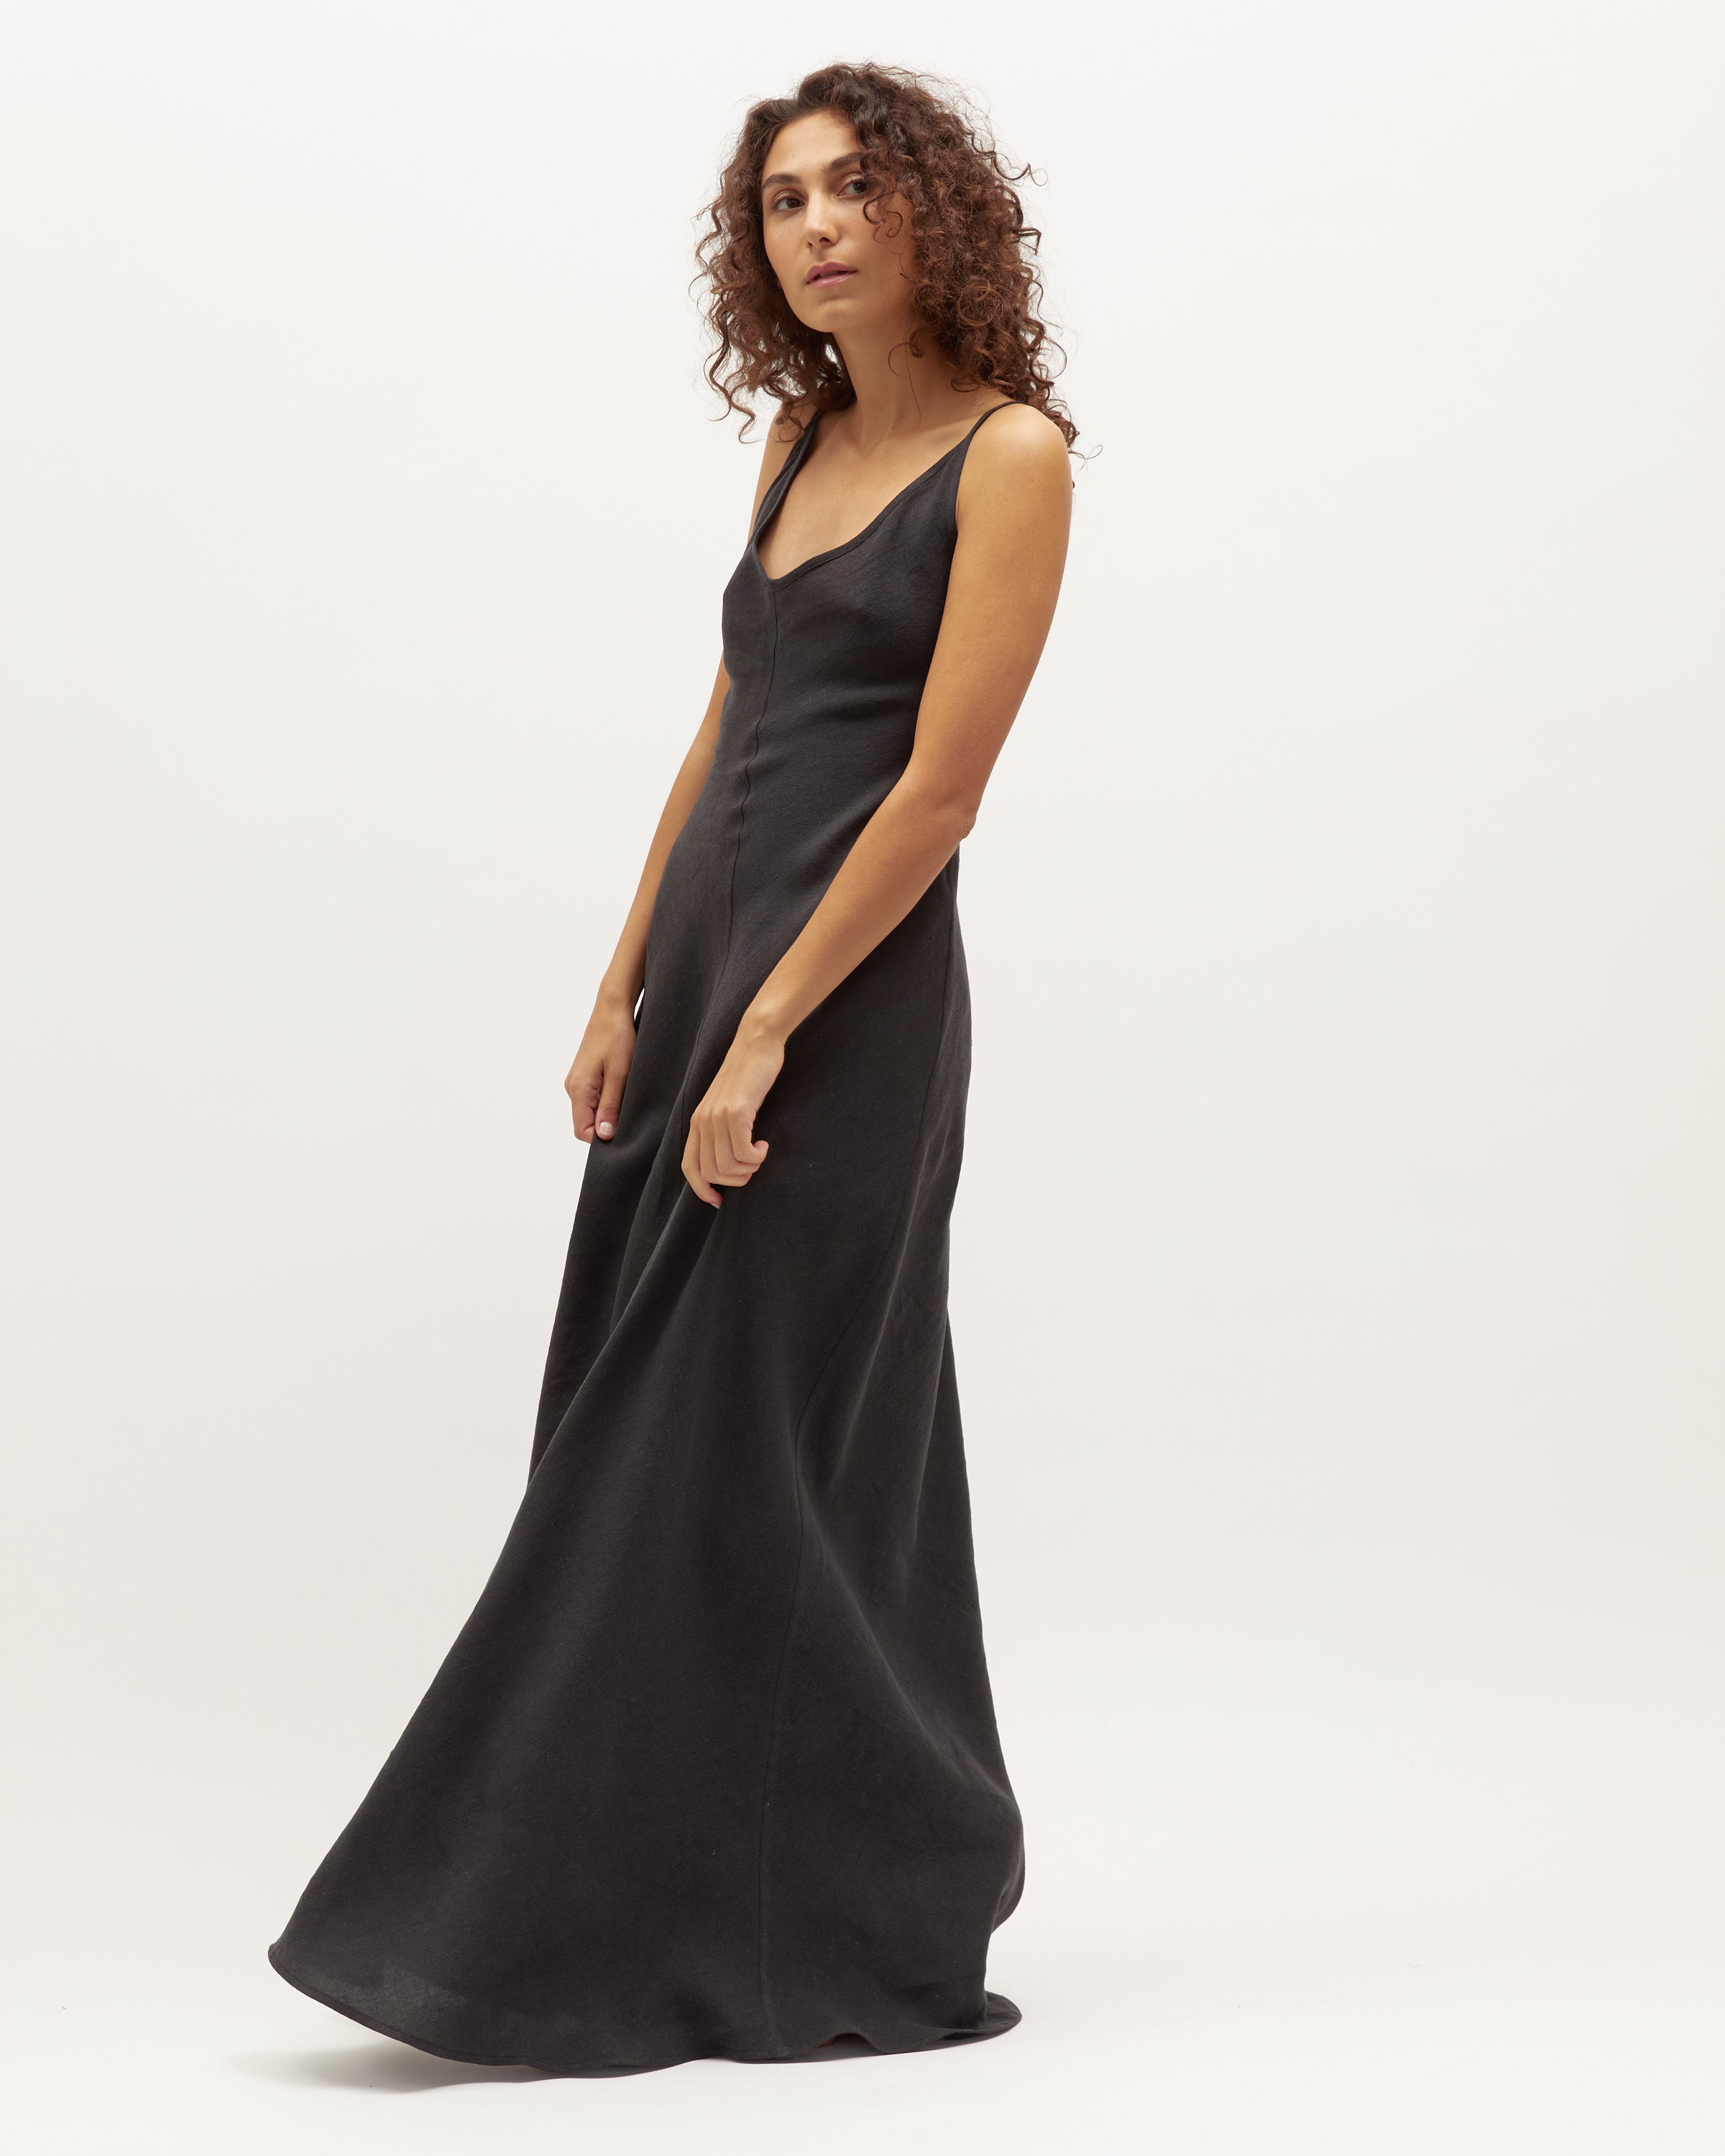 Sloane Dress | Black Washed Linen $360